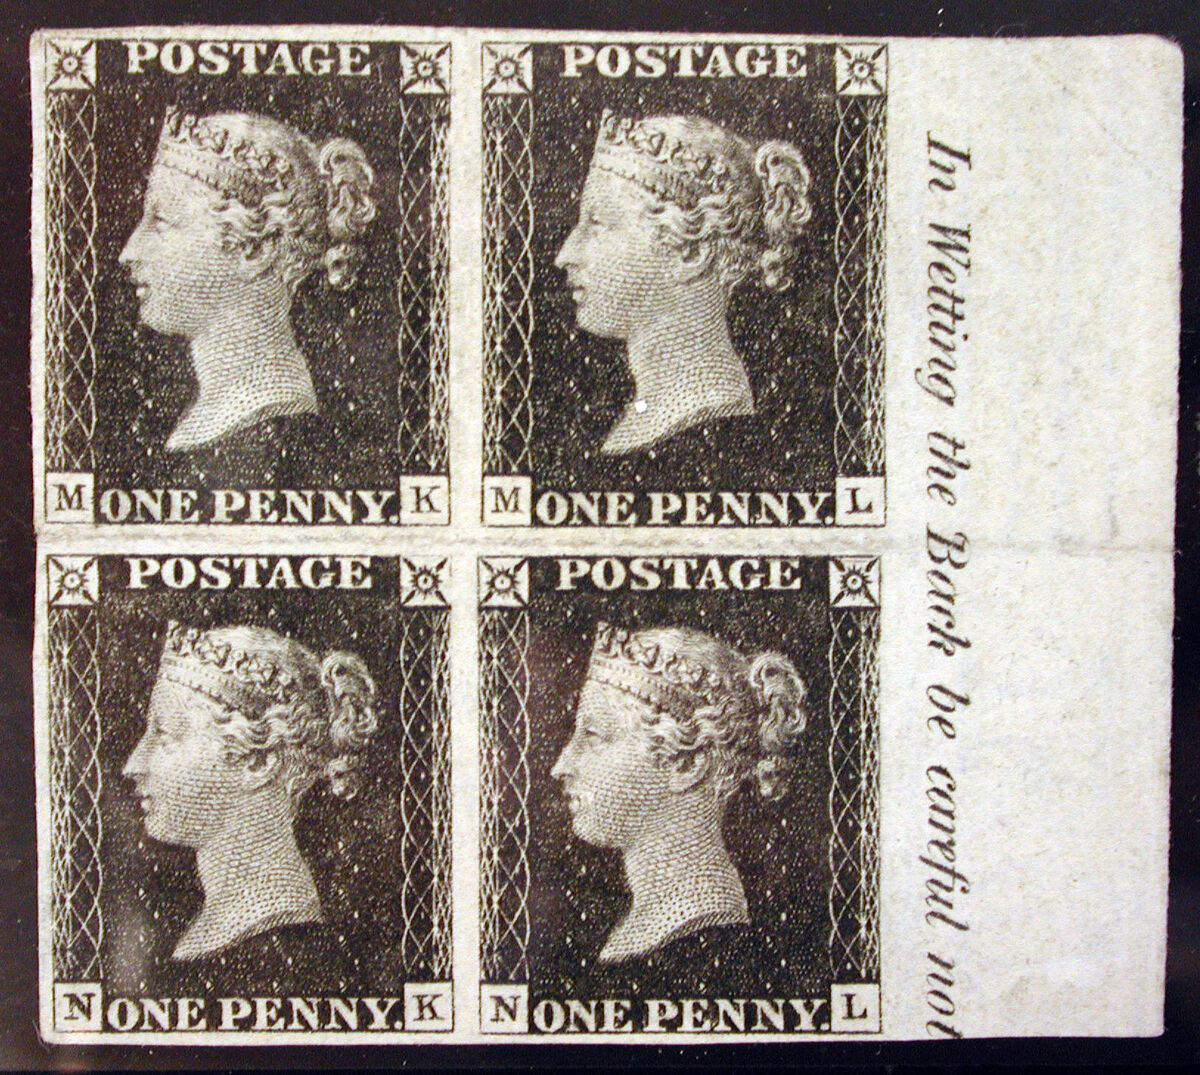 GFD 1/129: «Penny Black», die erste selbstklebende Briefmarke, herausgegeben von Perkins Bacon & Co., nach William Wyon, 1840